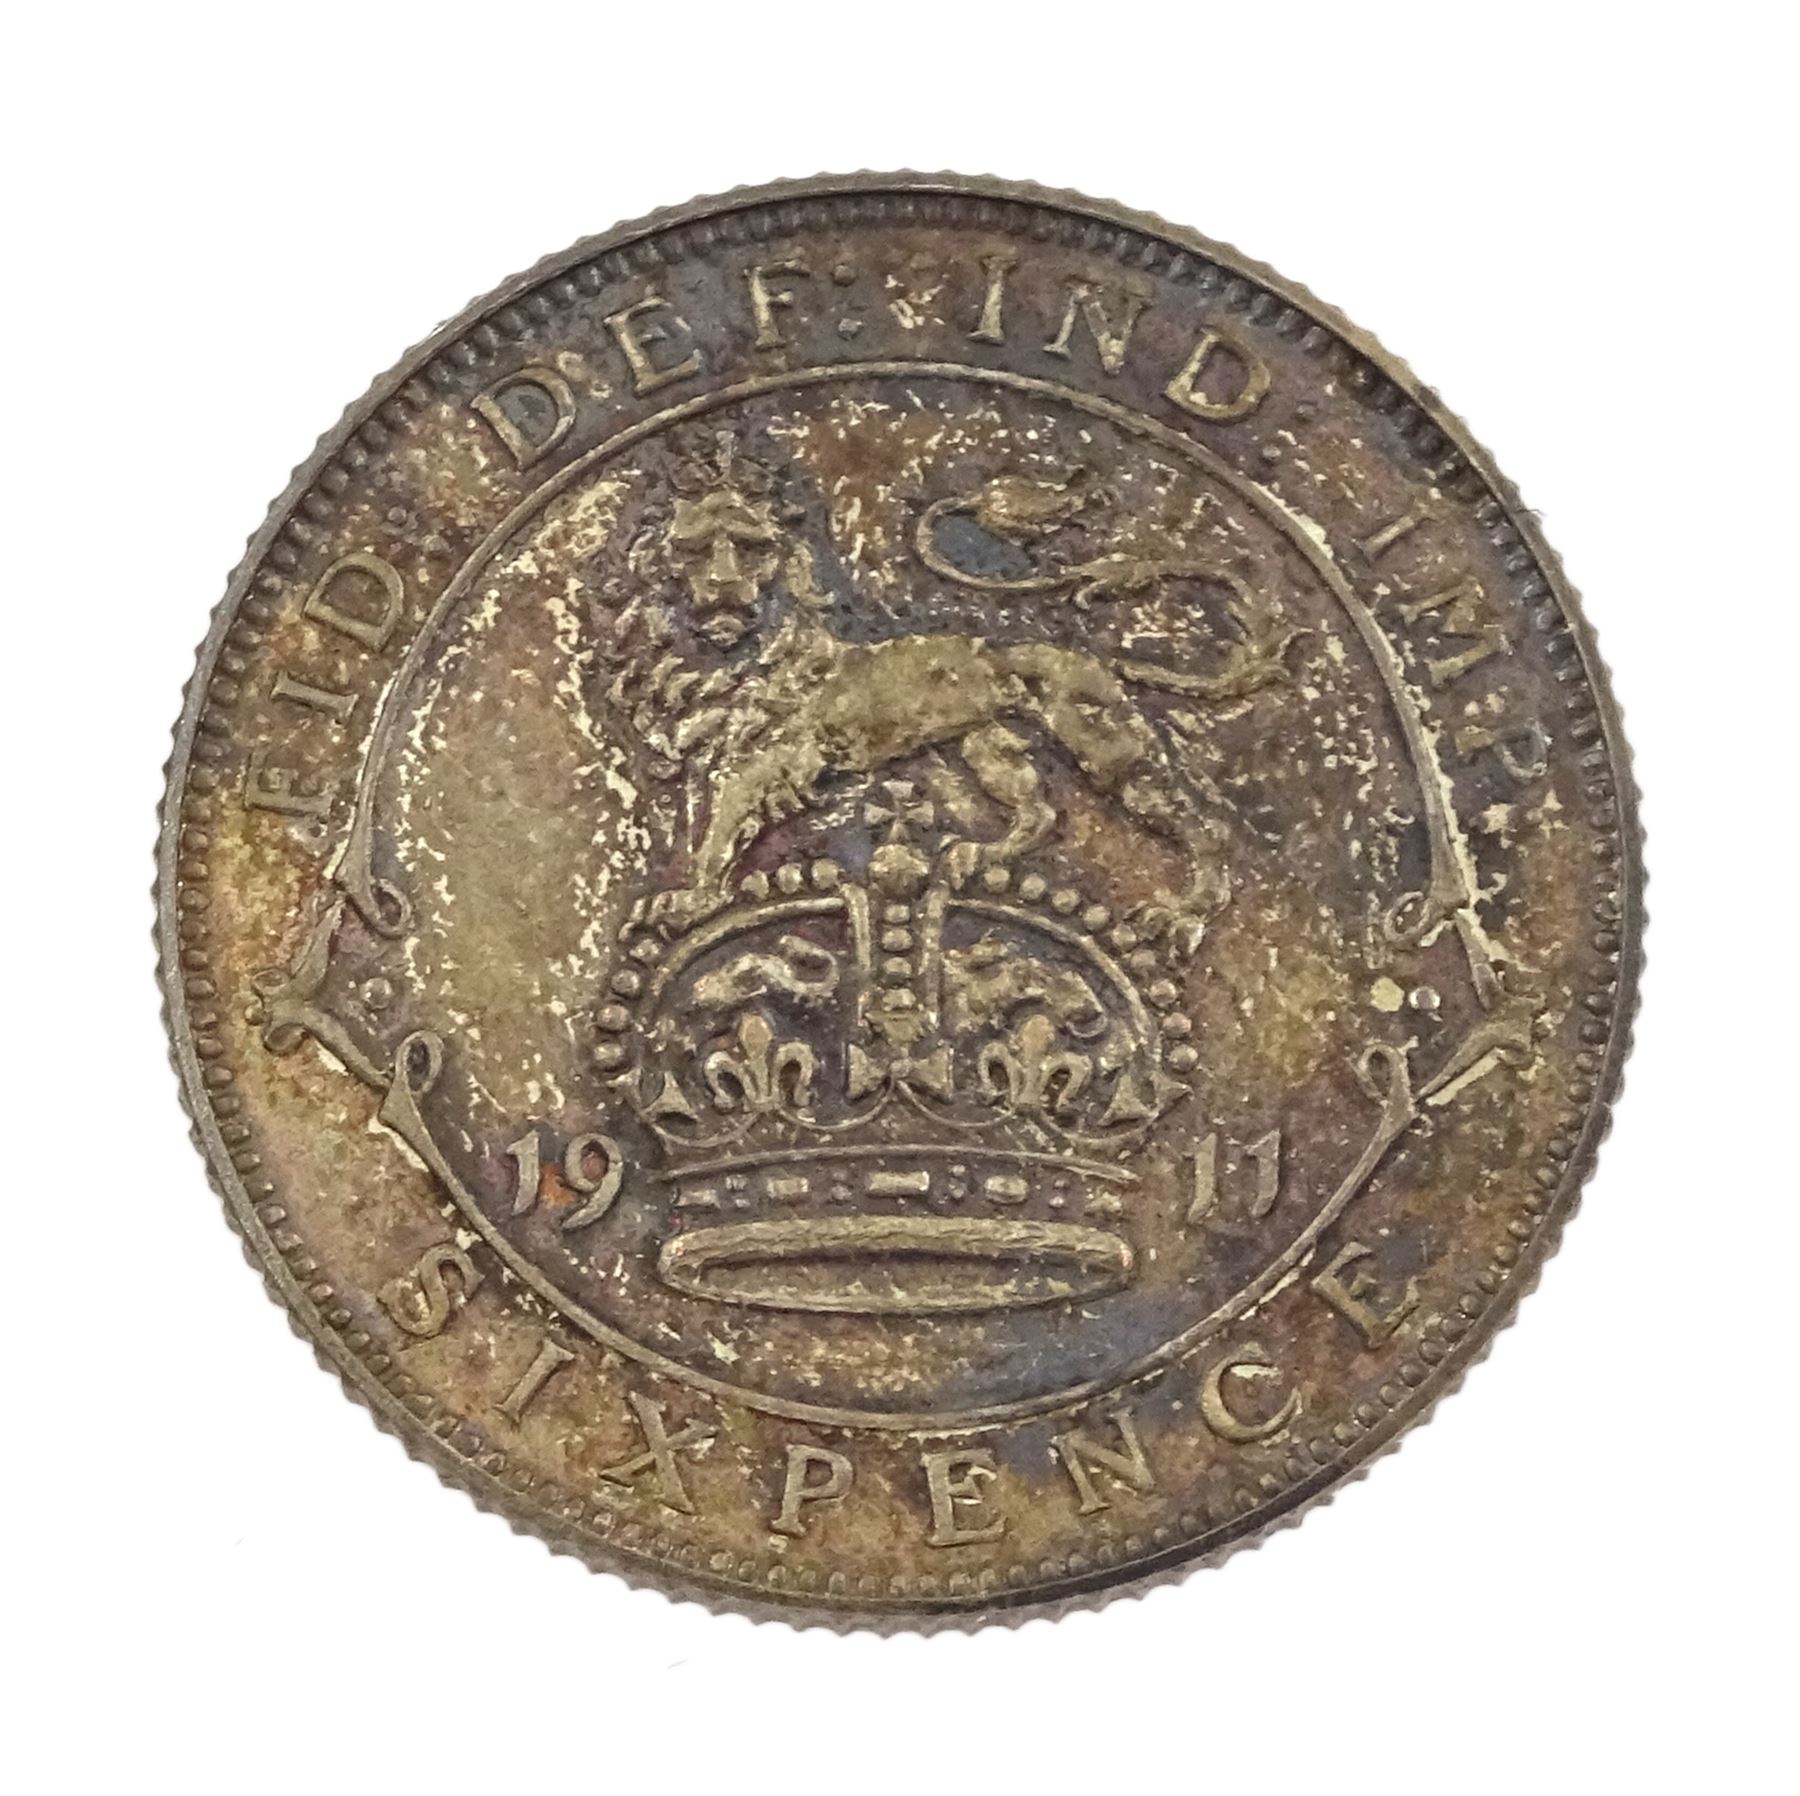 King George V 1911 proof short coin set - Image 17 of 24